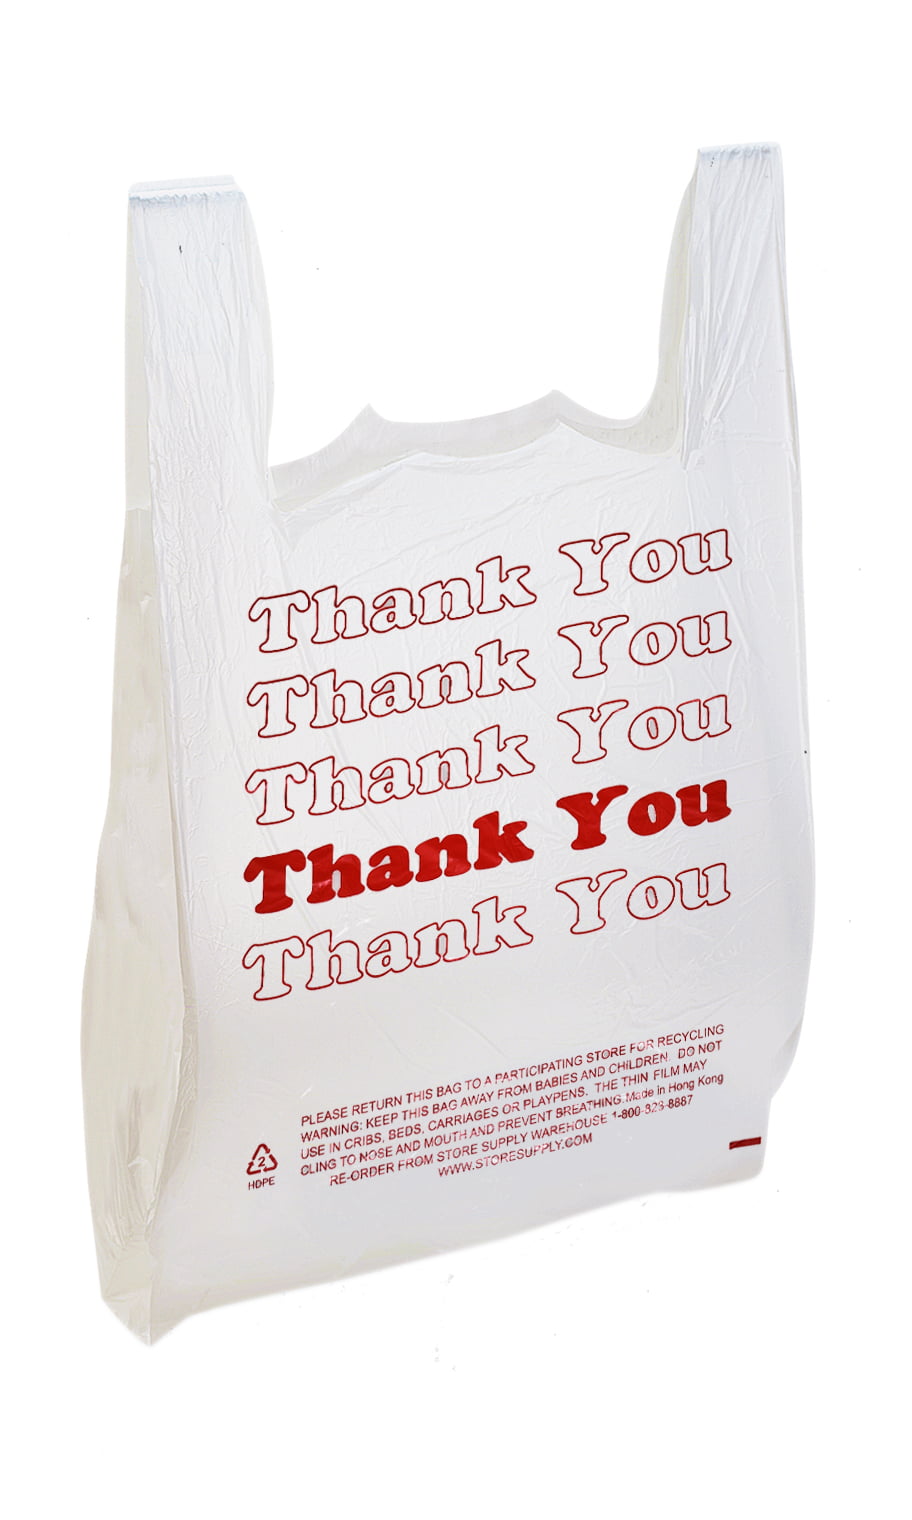 Details about   100 LEOPARD Print Design Plastic T-Shirt Retail Shop Bags Handles 11.5 x 6 x 21 